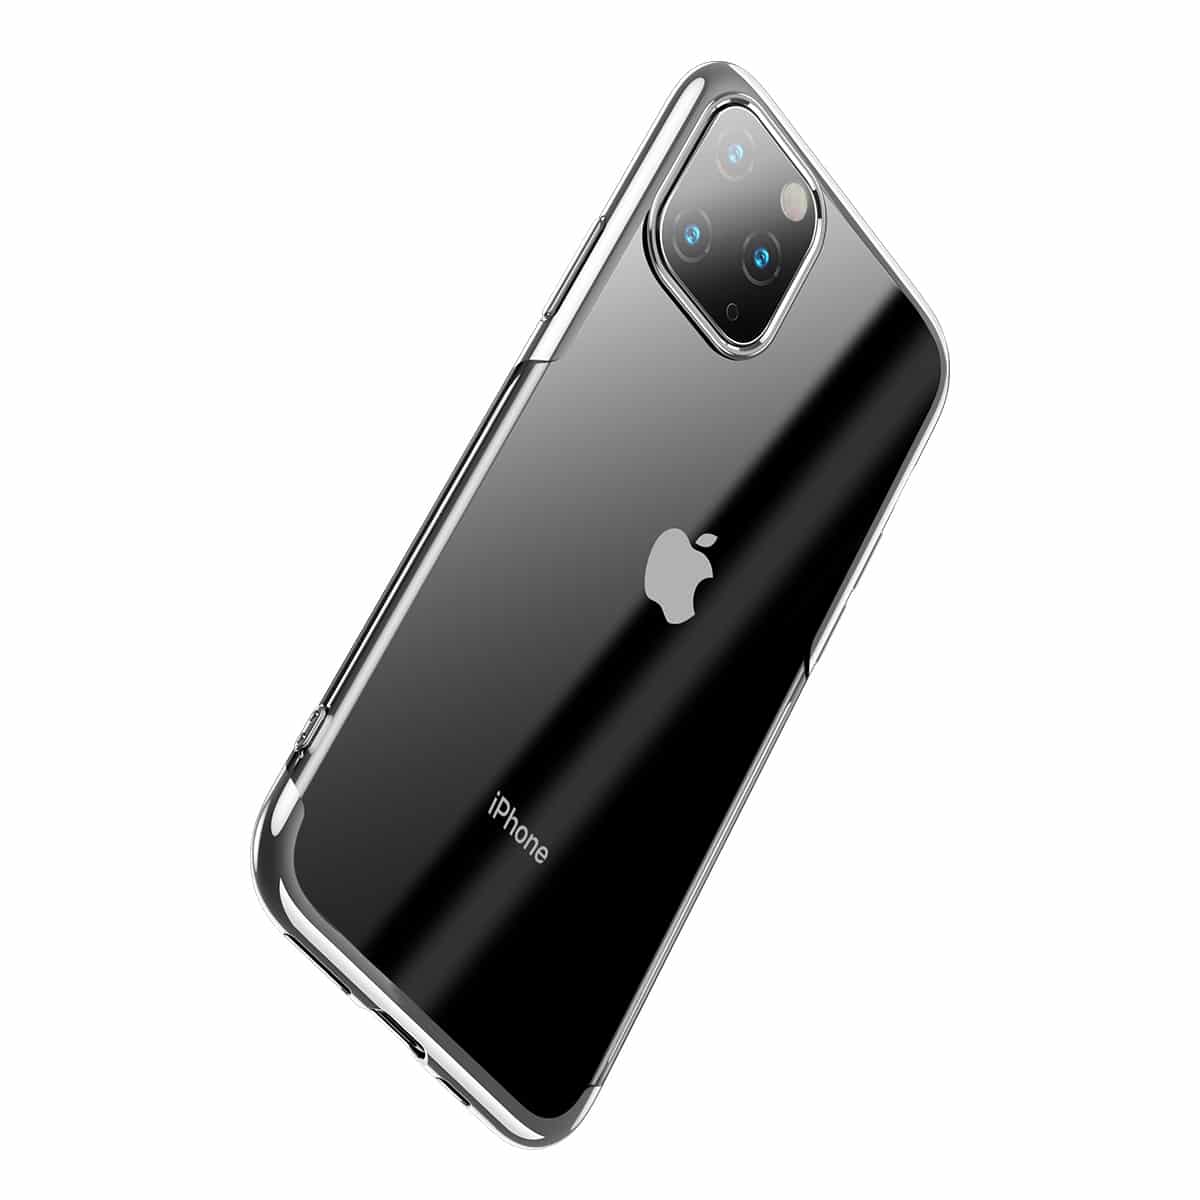 Protection en Verre Trempé pour Écran iPhone 11 Pro / X / XS (2 Pcs) BASEUS